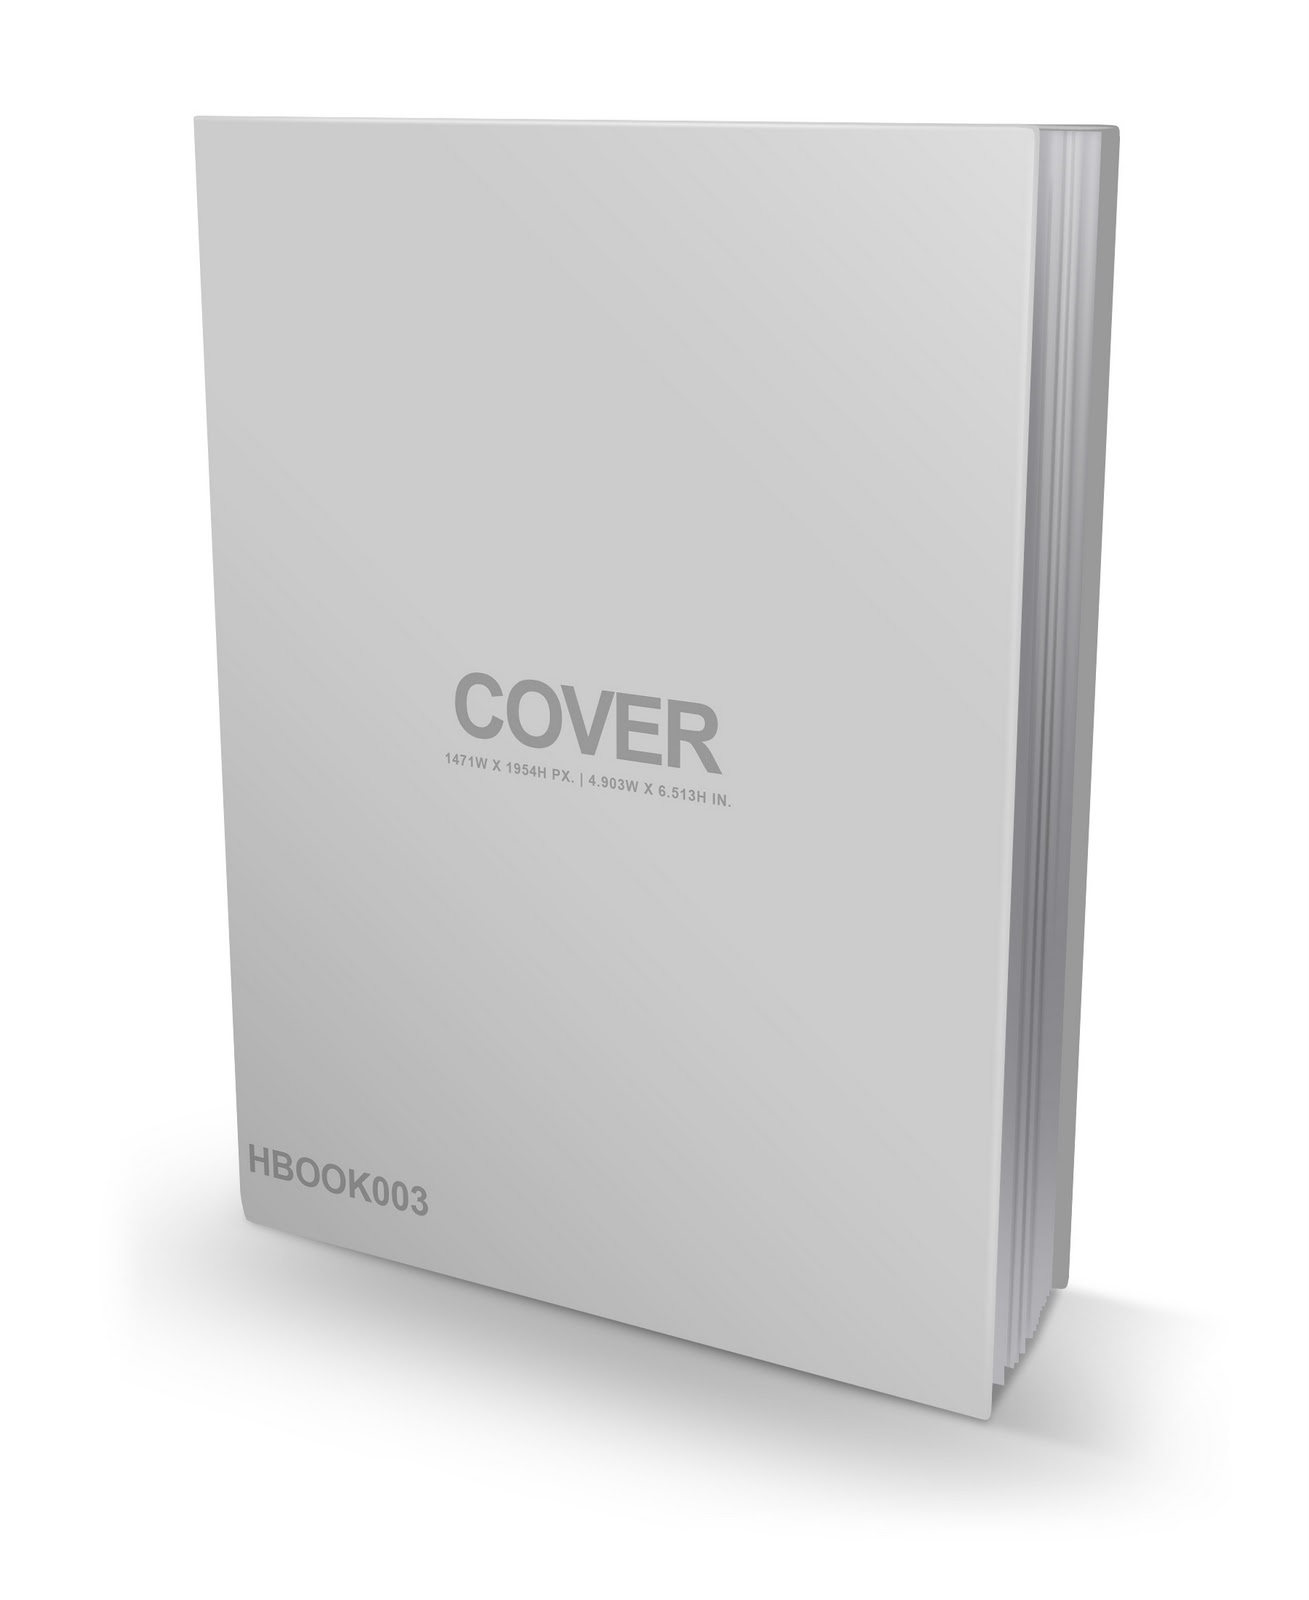 Ebook Cover So Funktioniert Ein Ebook Cover Design Wettbewerb